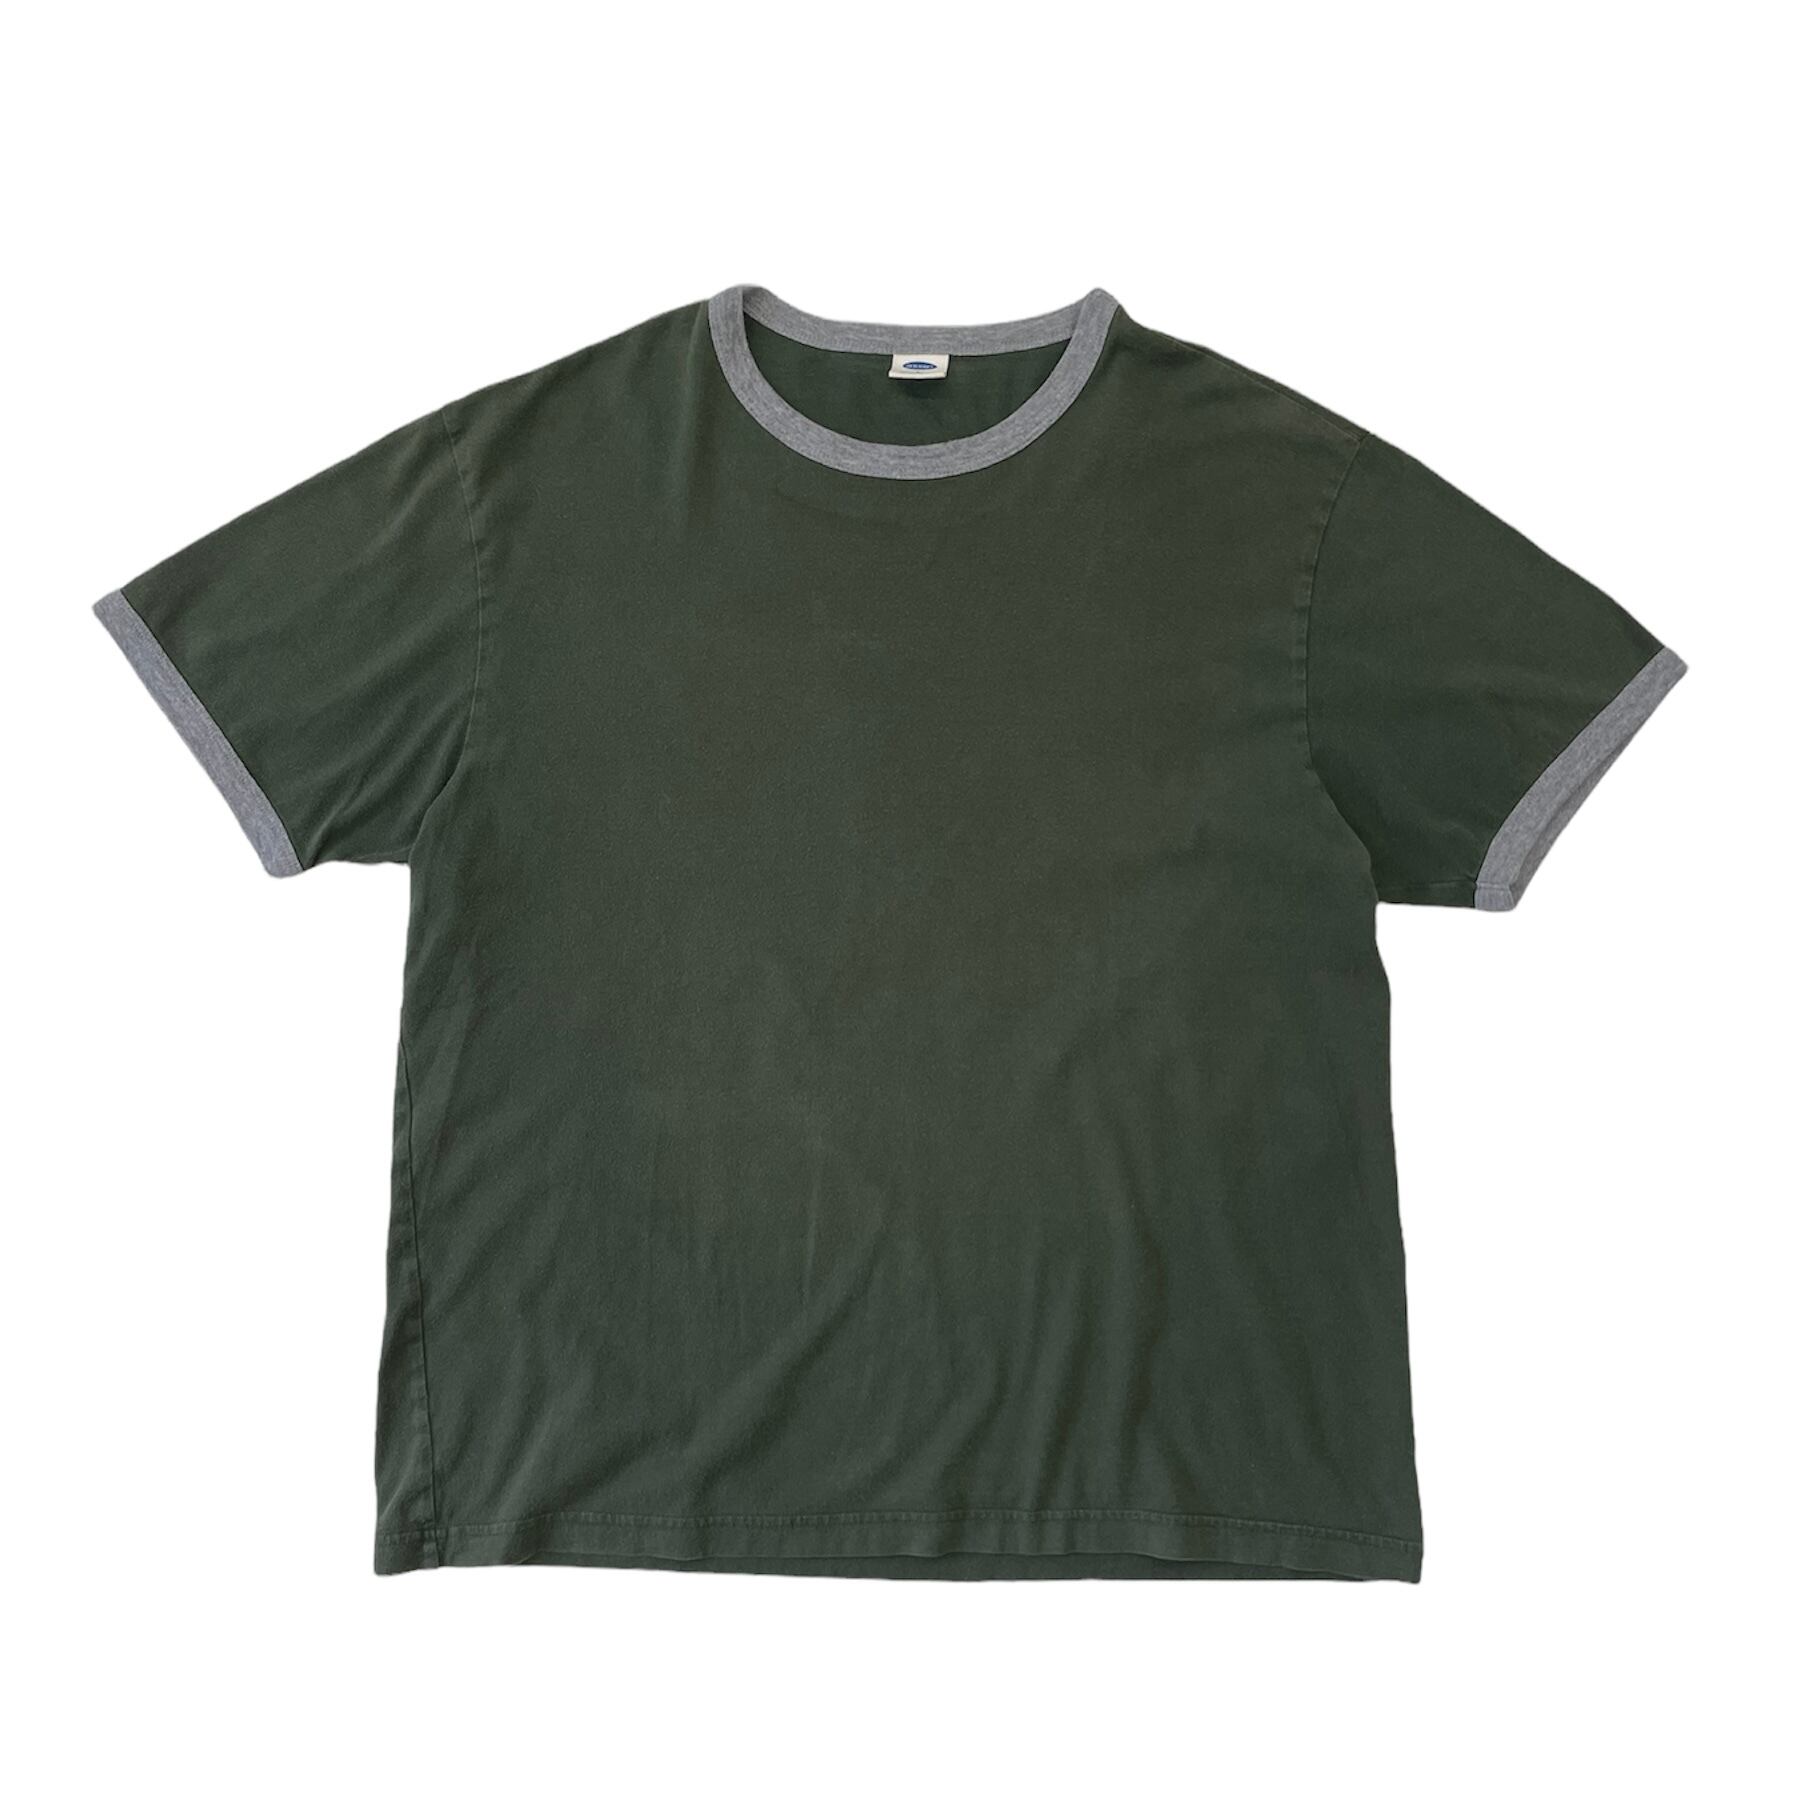 1039. 2000's OLD NAVY ringer tee グリーン×グレー Tシャツ 半袖 ...